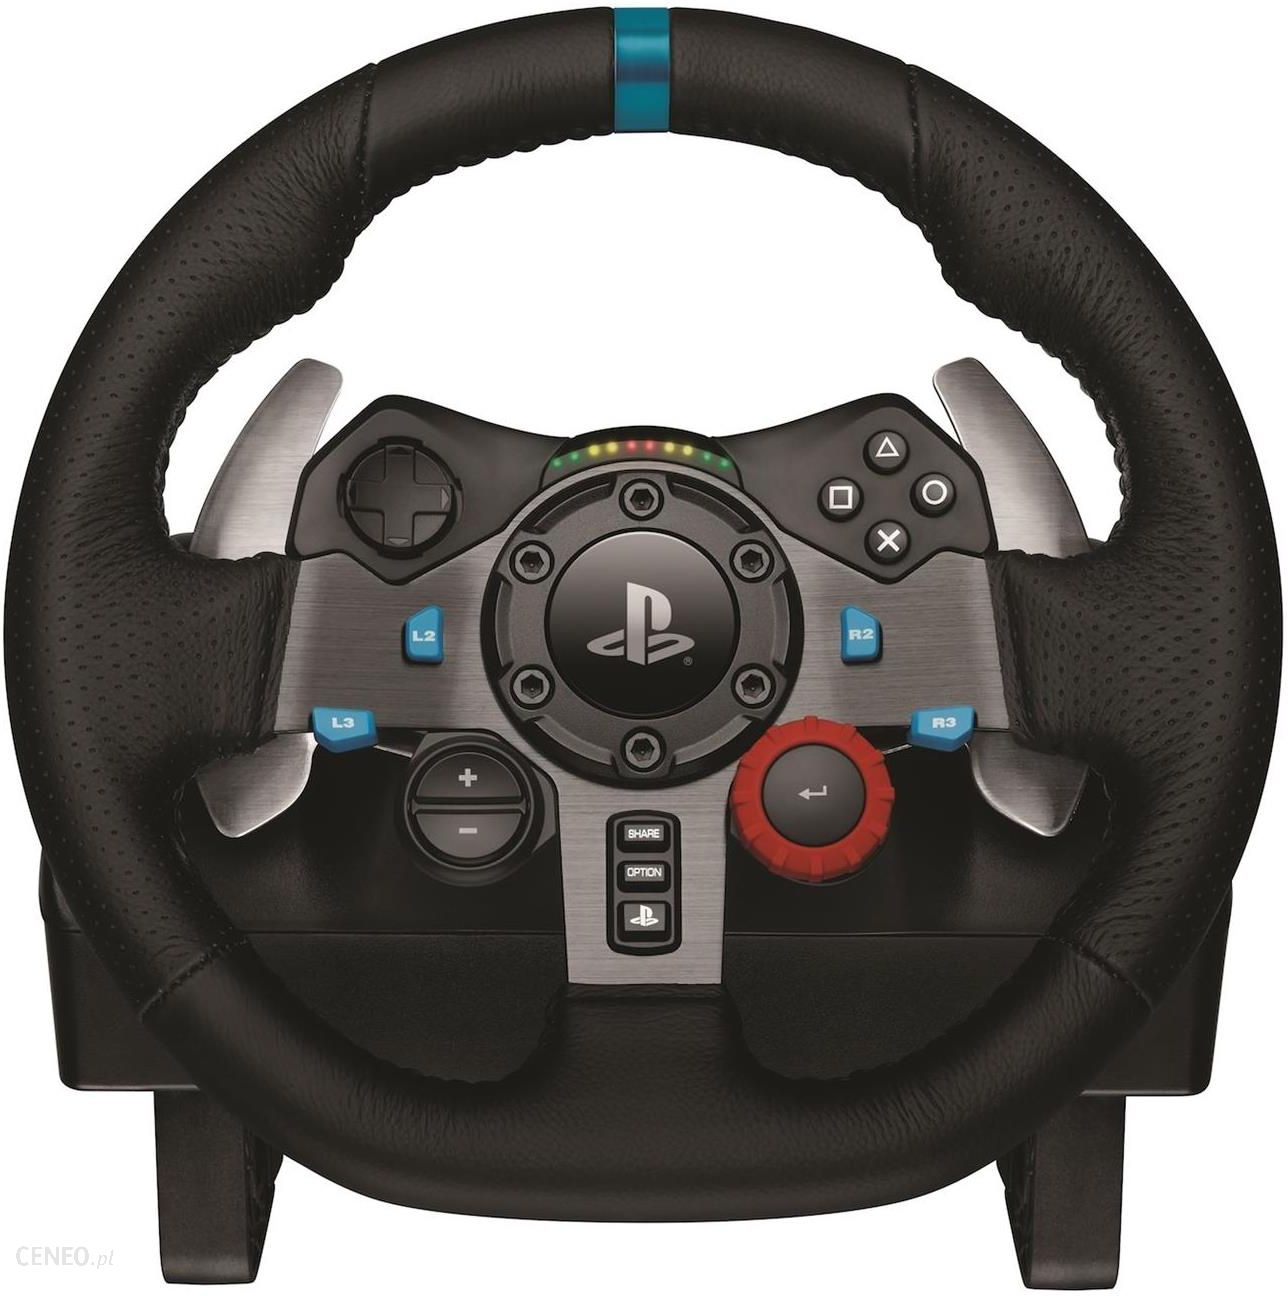 Kierownica Logitech G29 Racing (941-000112) - Ceny i opinie - Ceneo.pl